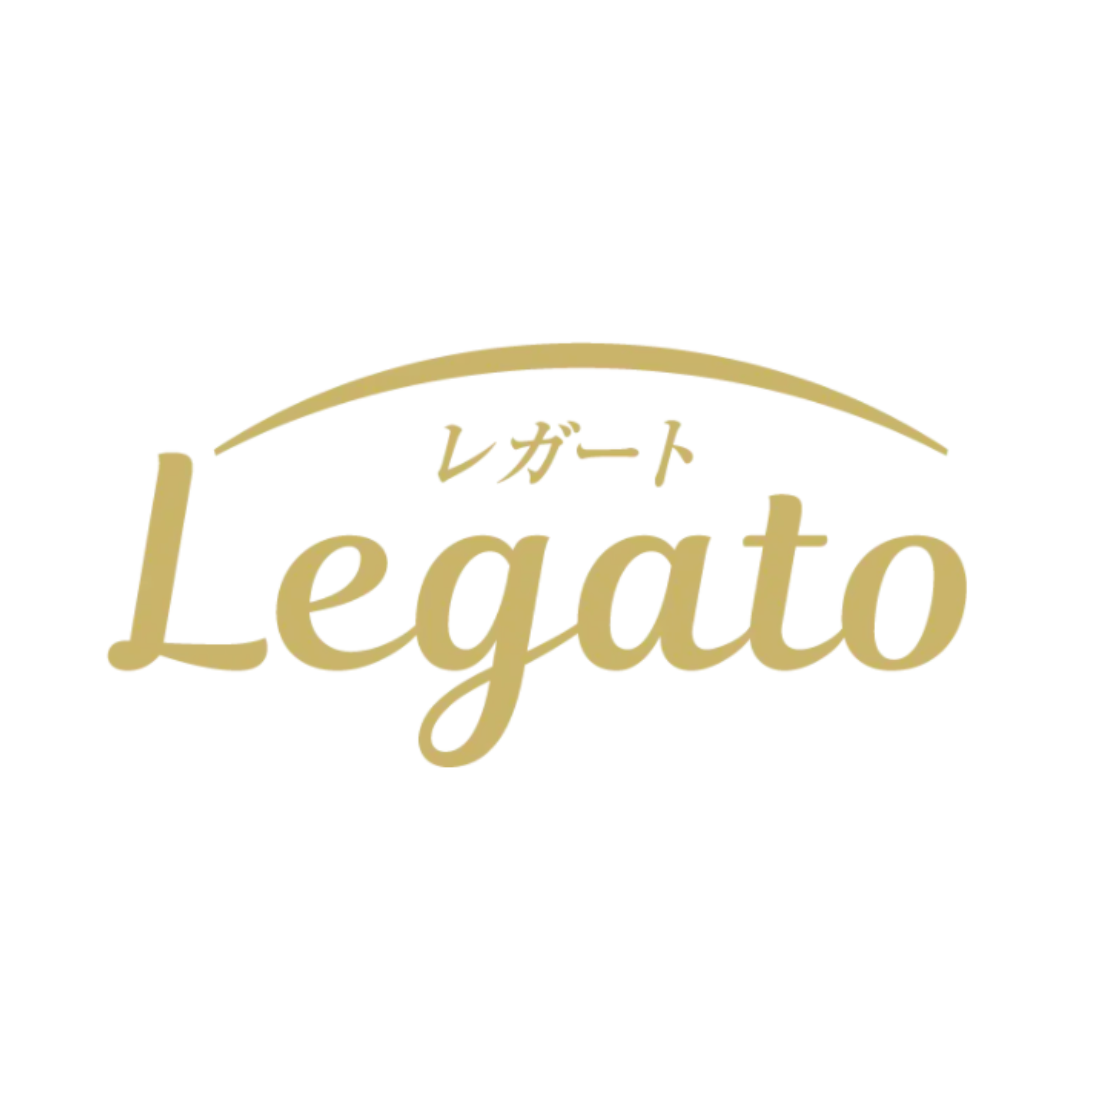 Legato様ロゴ